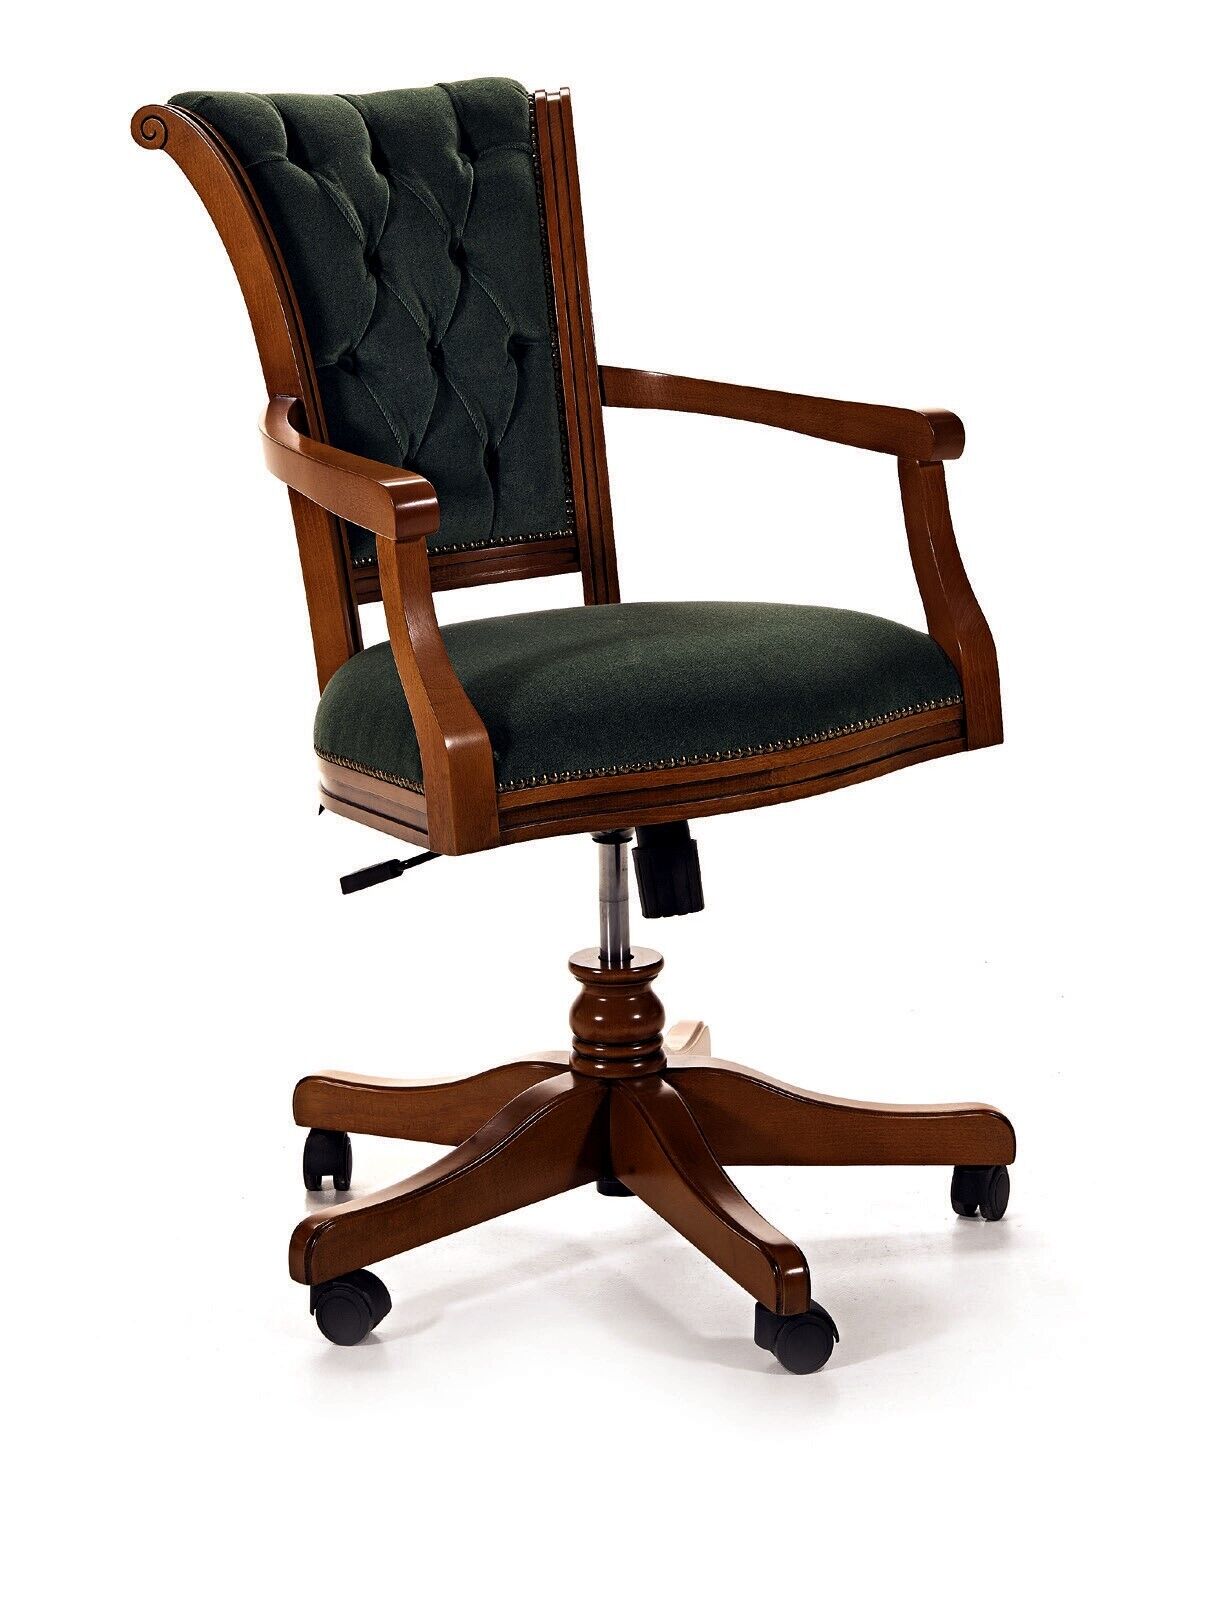 Büro Sessel Gaming Stuhl Bürostuhl Schreibtisch Drehstuhl Chef Neu Sessel 1713